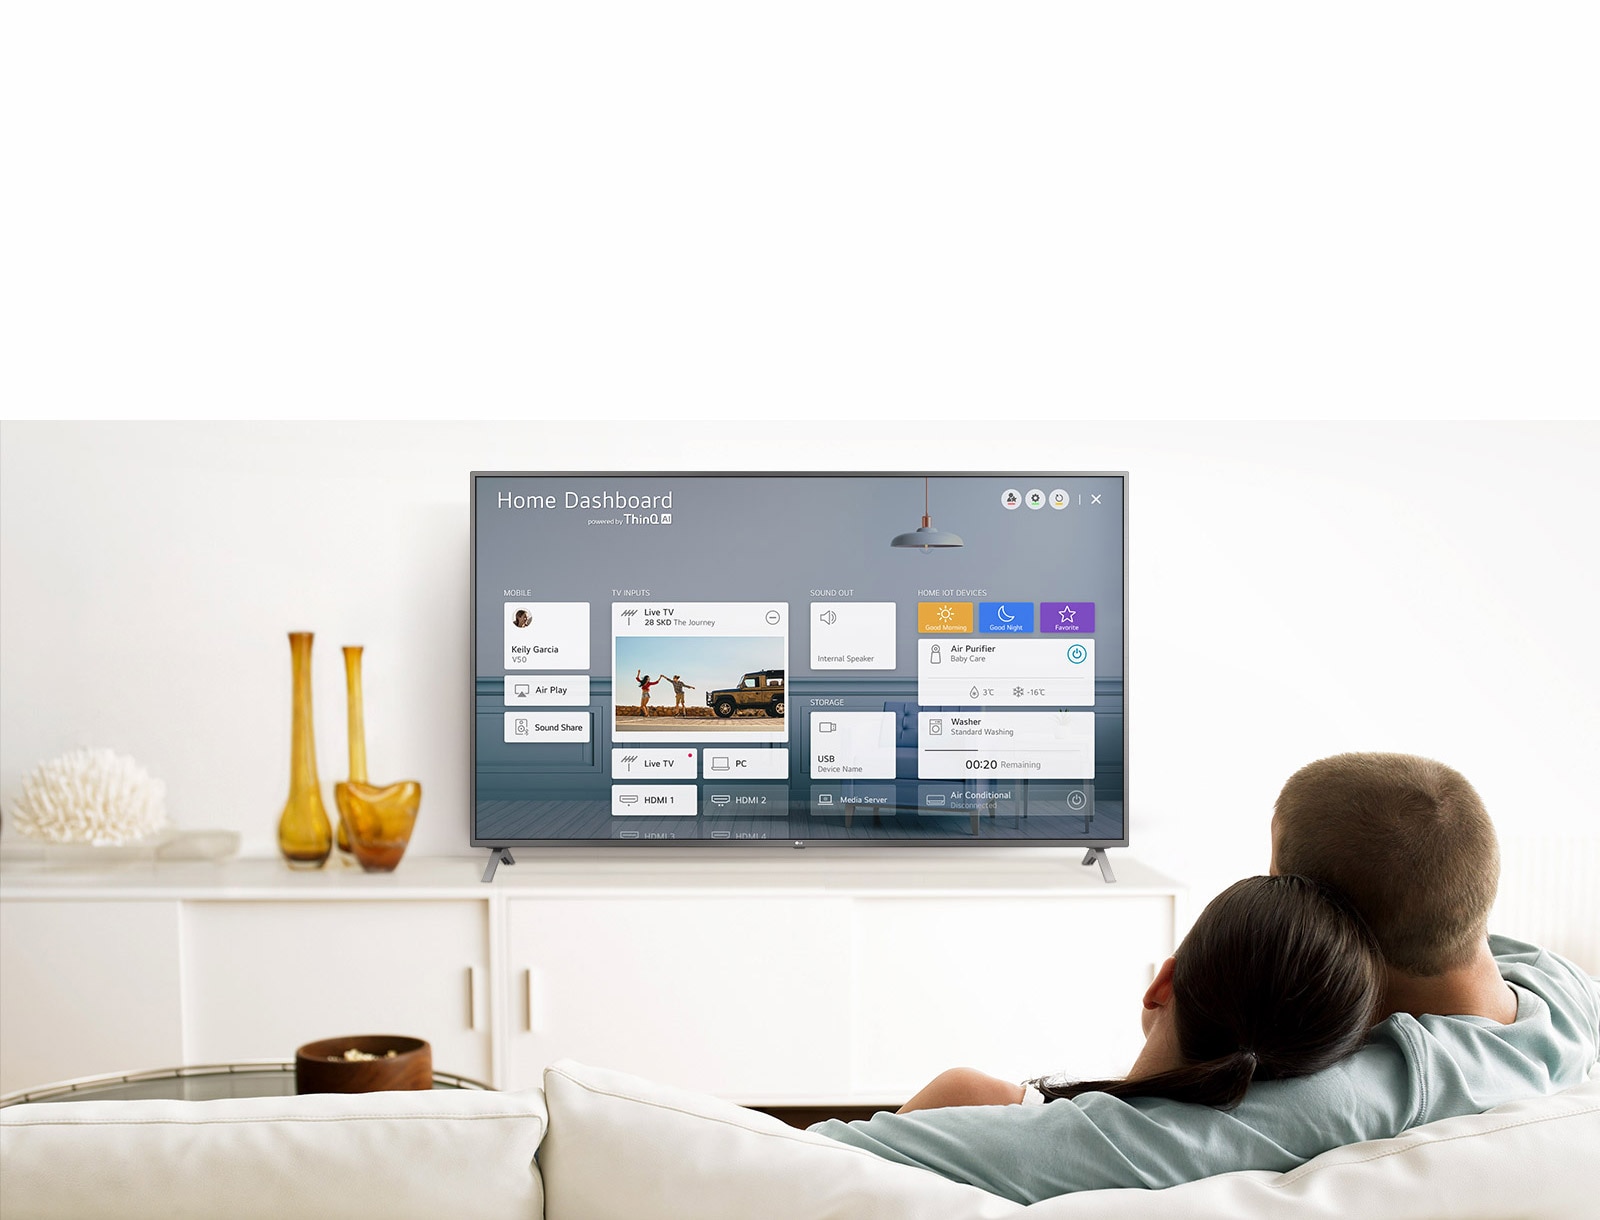 У вітальні жінка сидить на дивані перед телевізором, на екрані якого показано панель Home Dashboard для керування домашньою екосистемою.